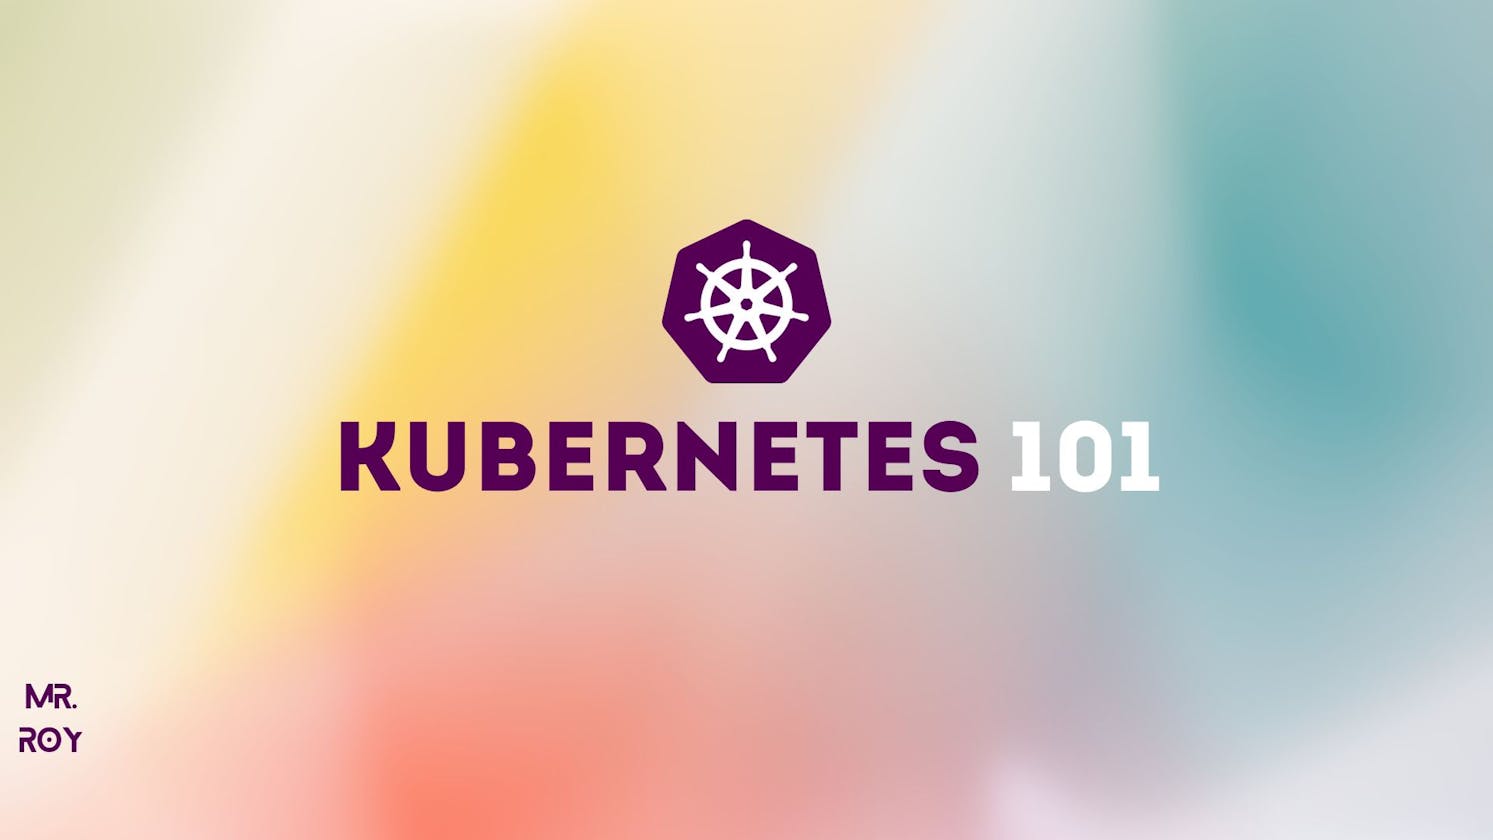 Kubernetes 101 - Introduction